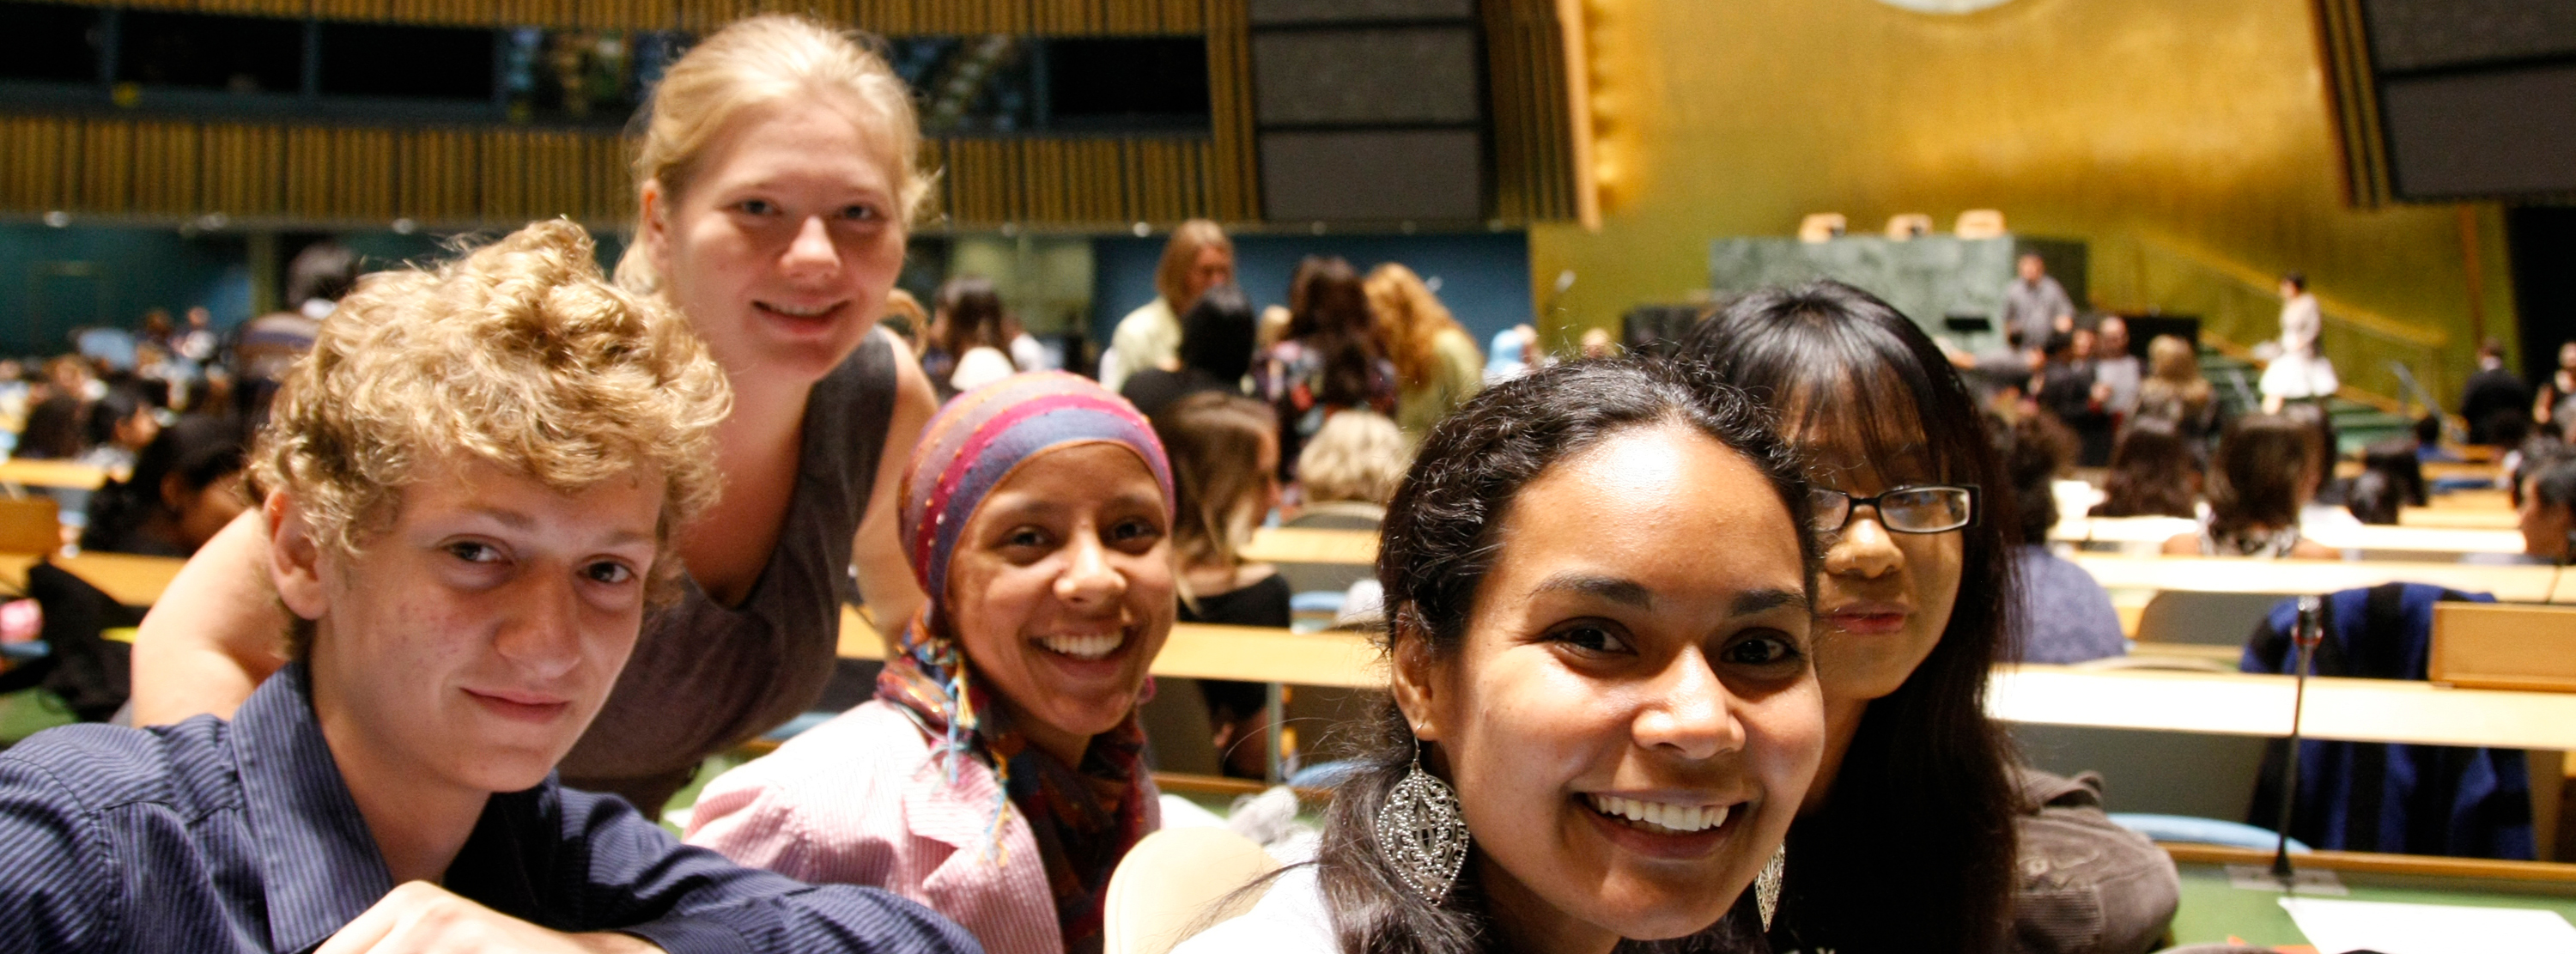 联合国大会堂内，一群笑容满面的青年人。